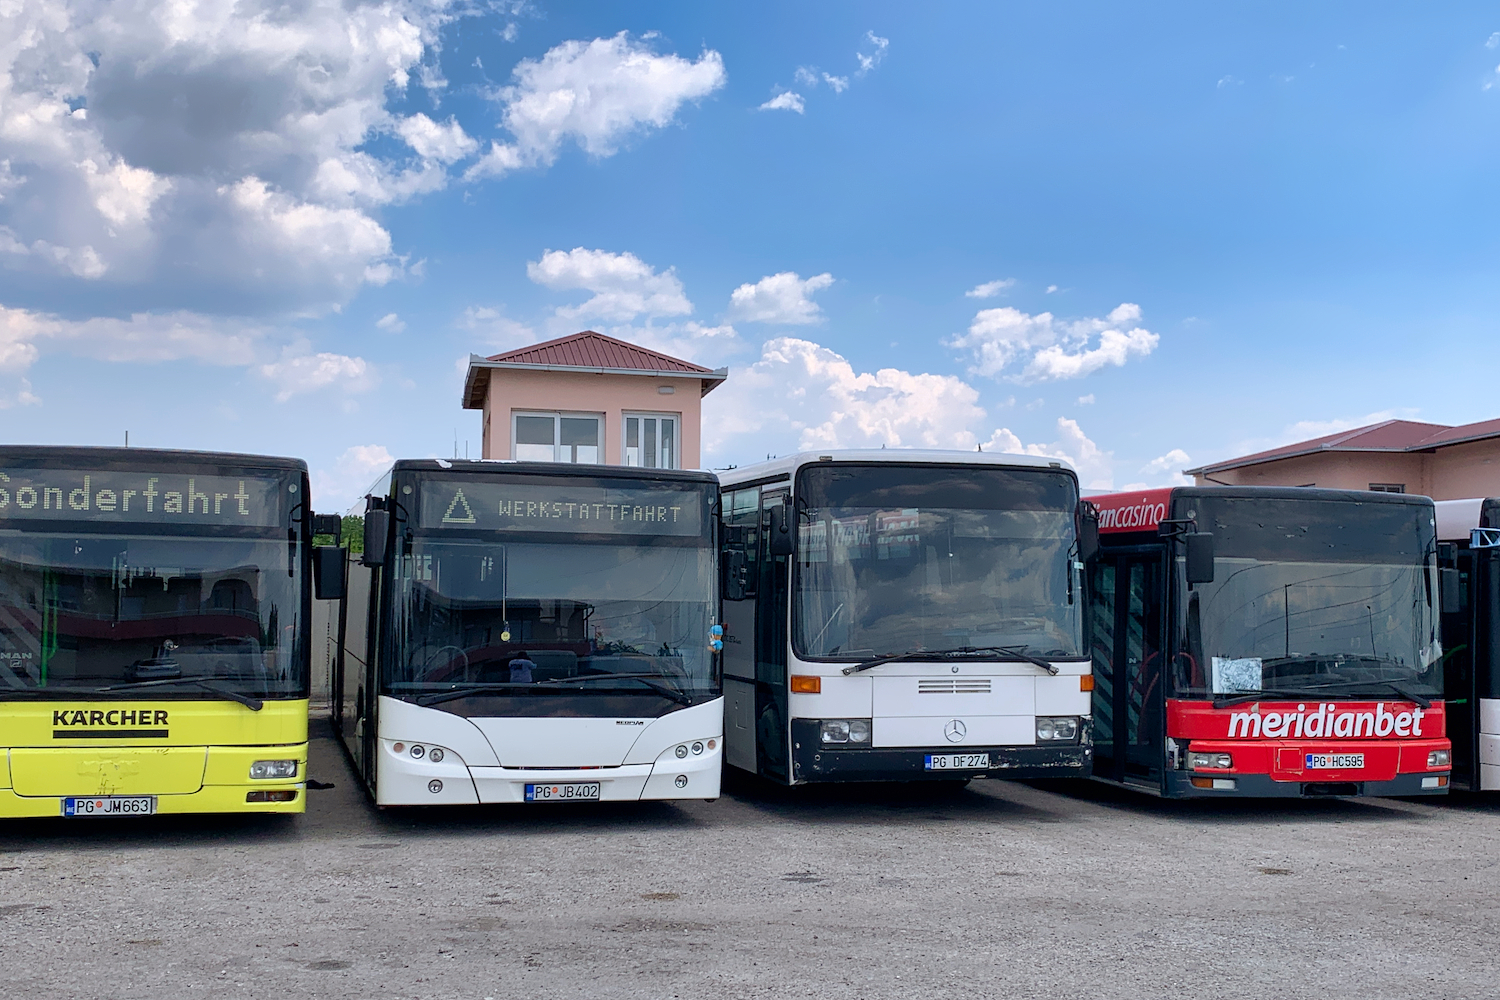 Podgorica, MAN A21 NL**3 nr. PG JM663; Podgorica, Neoplan N4516 Centroliner Evolution nr. PG JB402; Podgorica, Mercedes-Benz O408 nr. PG DF274; Podgorica, MAN A21 NL**3 nr. PG HC595